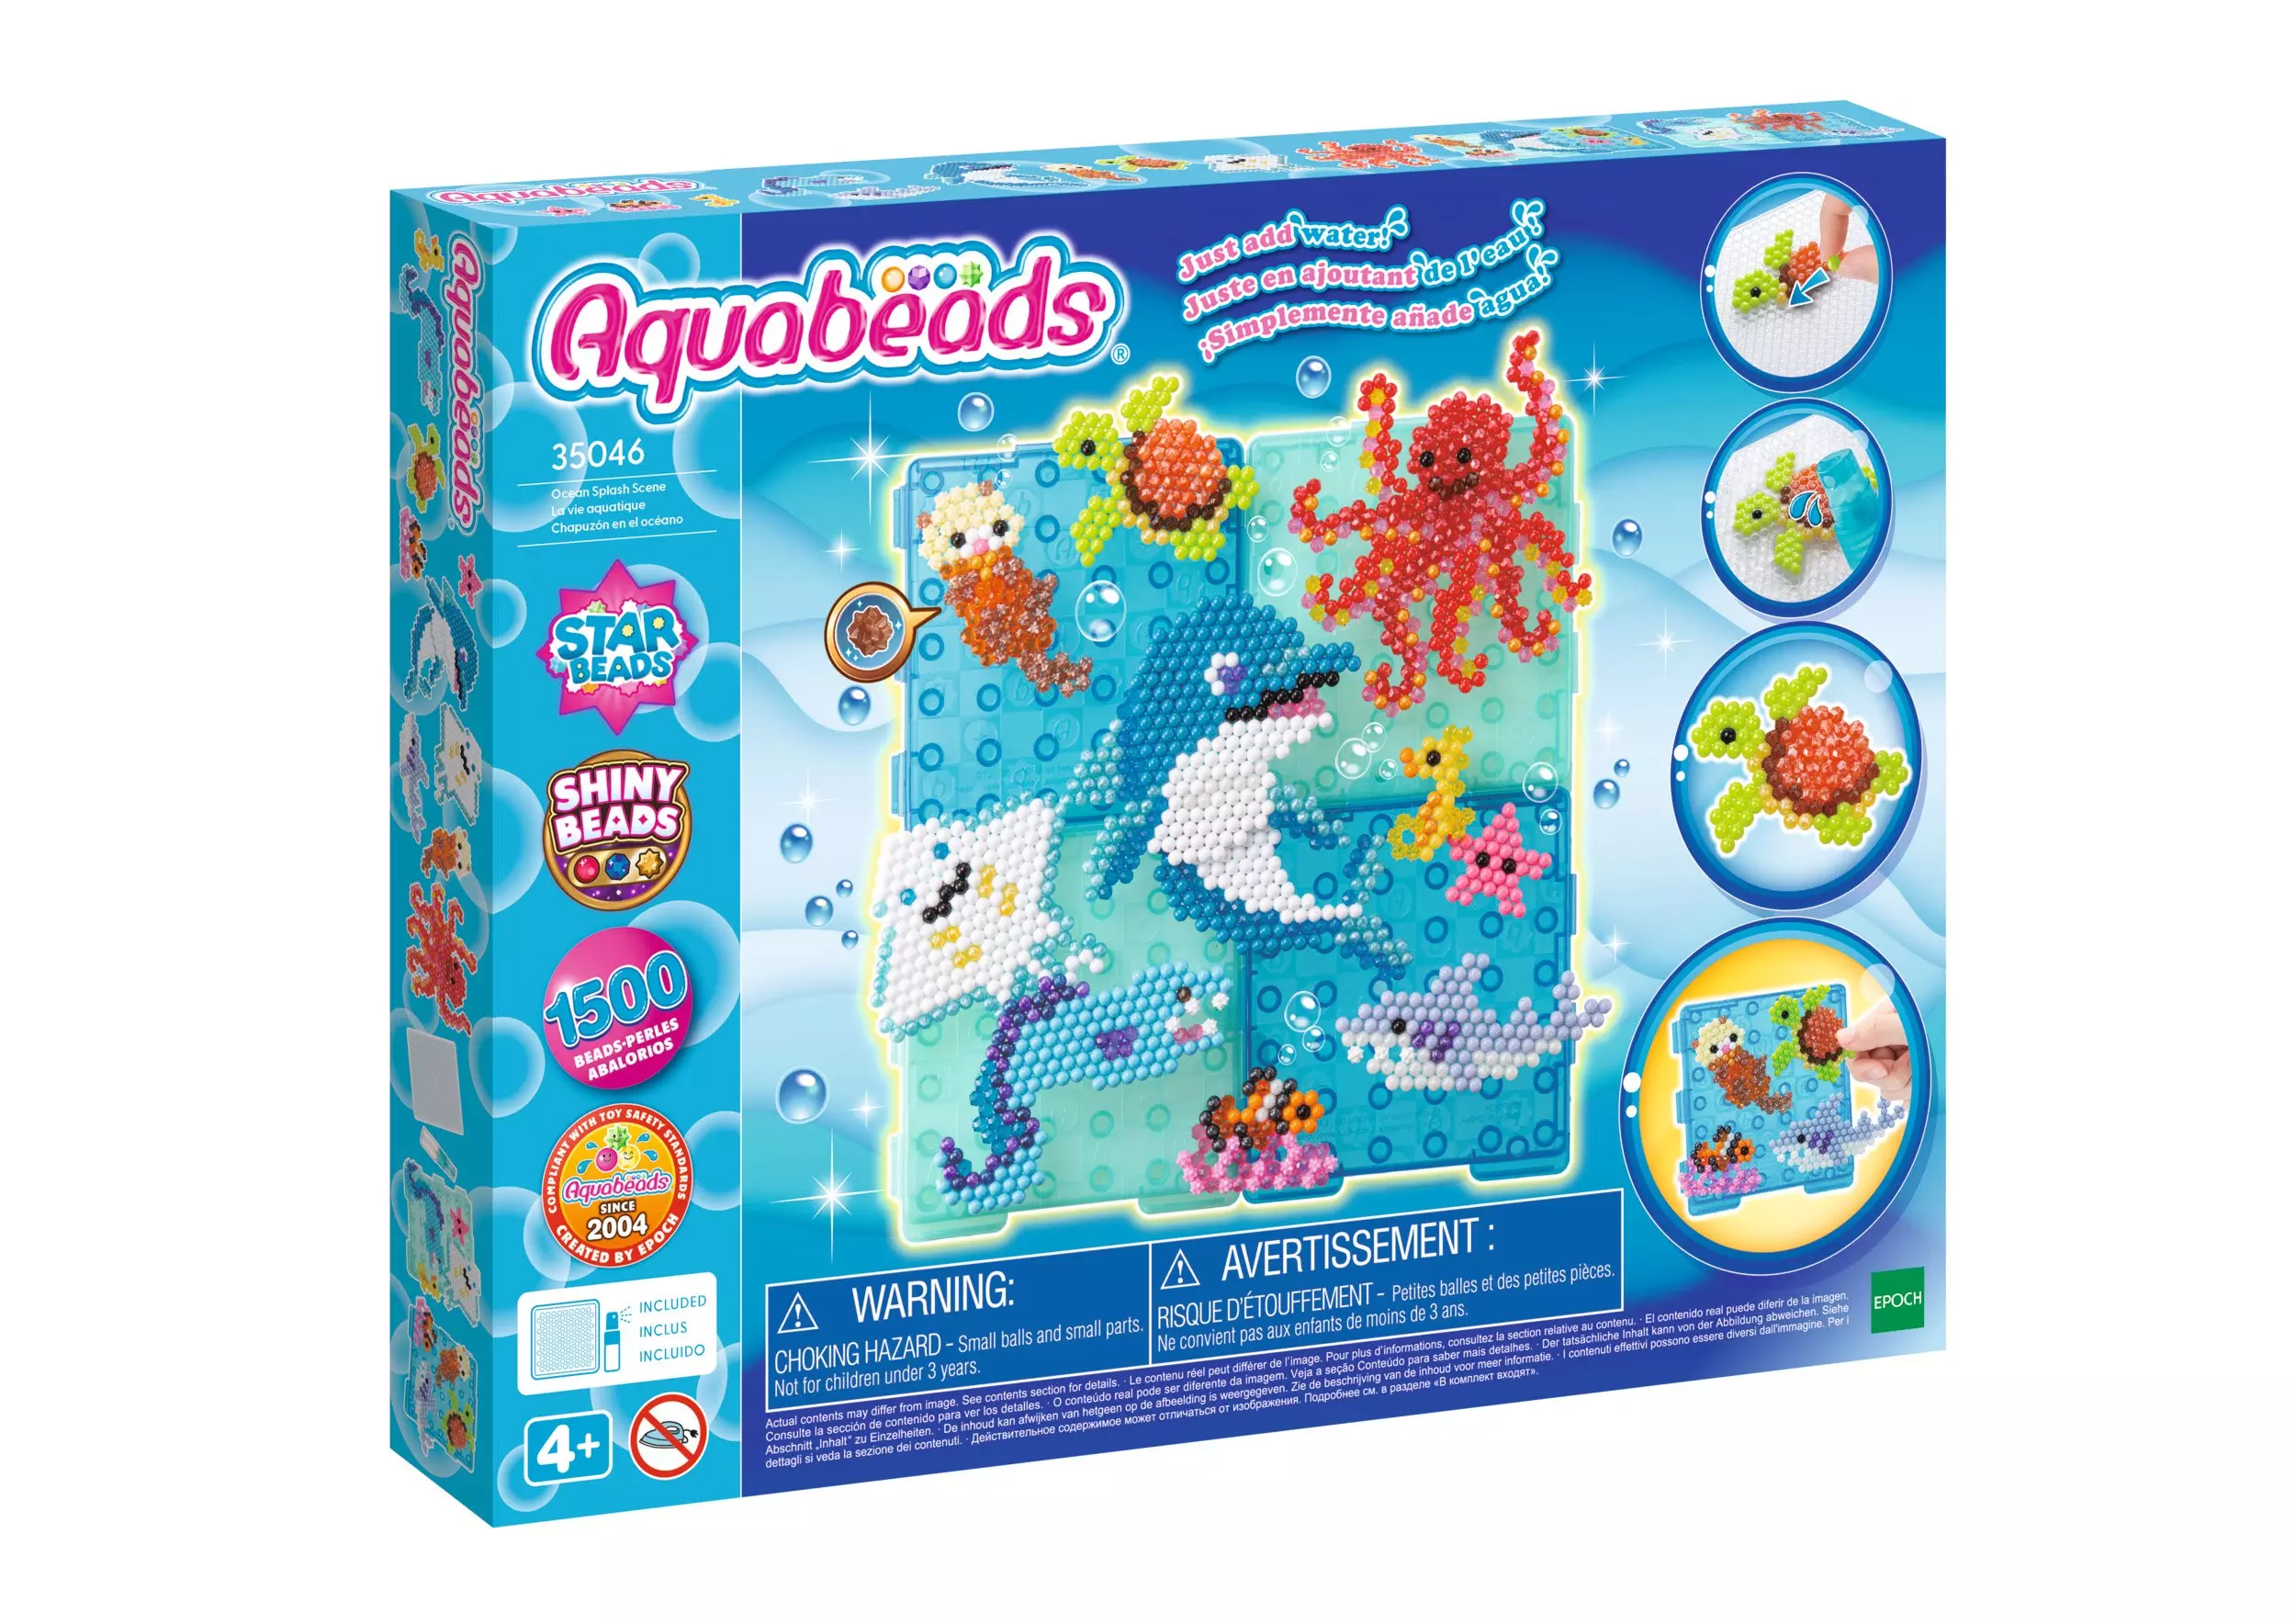 Aquabeads Ocean Splash Scene 35046